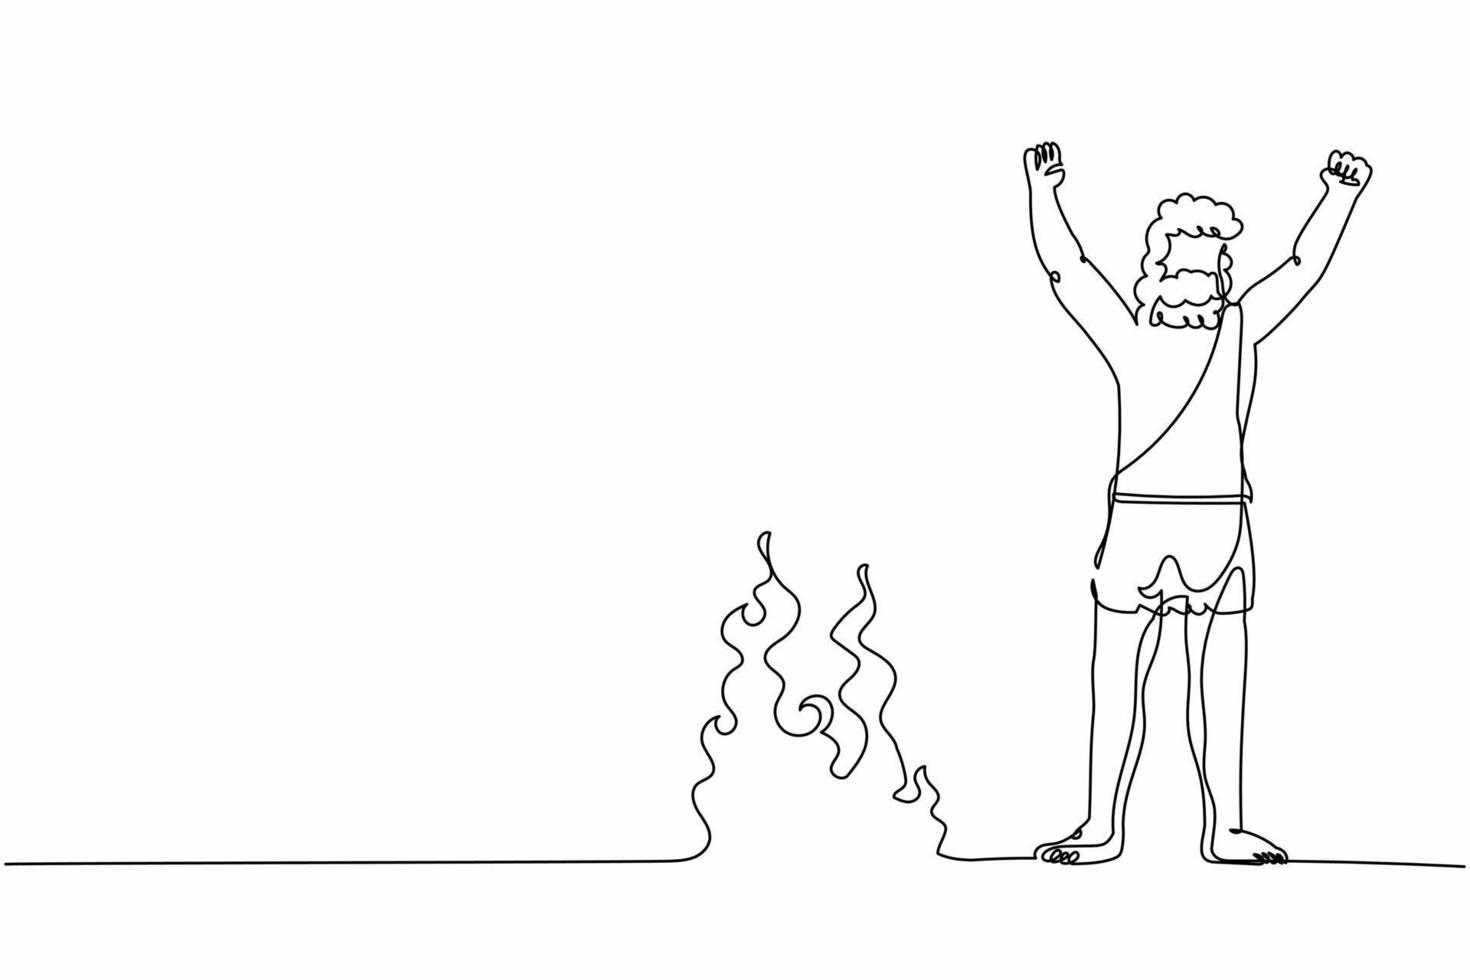 Höhlenmensch mit fortlaufender einzeiliger Zeichnung steht und hob die Hände um das Lagerfeuer. prähistorischer mann, der um lagerfeuer steht. nachts seinen Körper wärmen. einzeiliges zeichnen design vektorgrafik illustration vektor